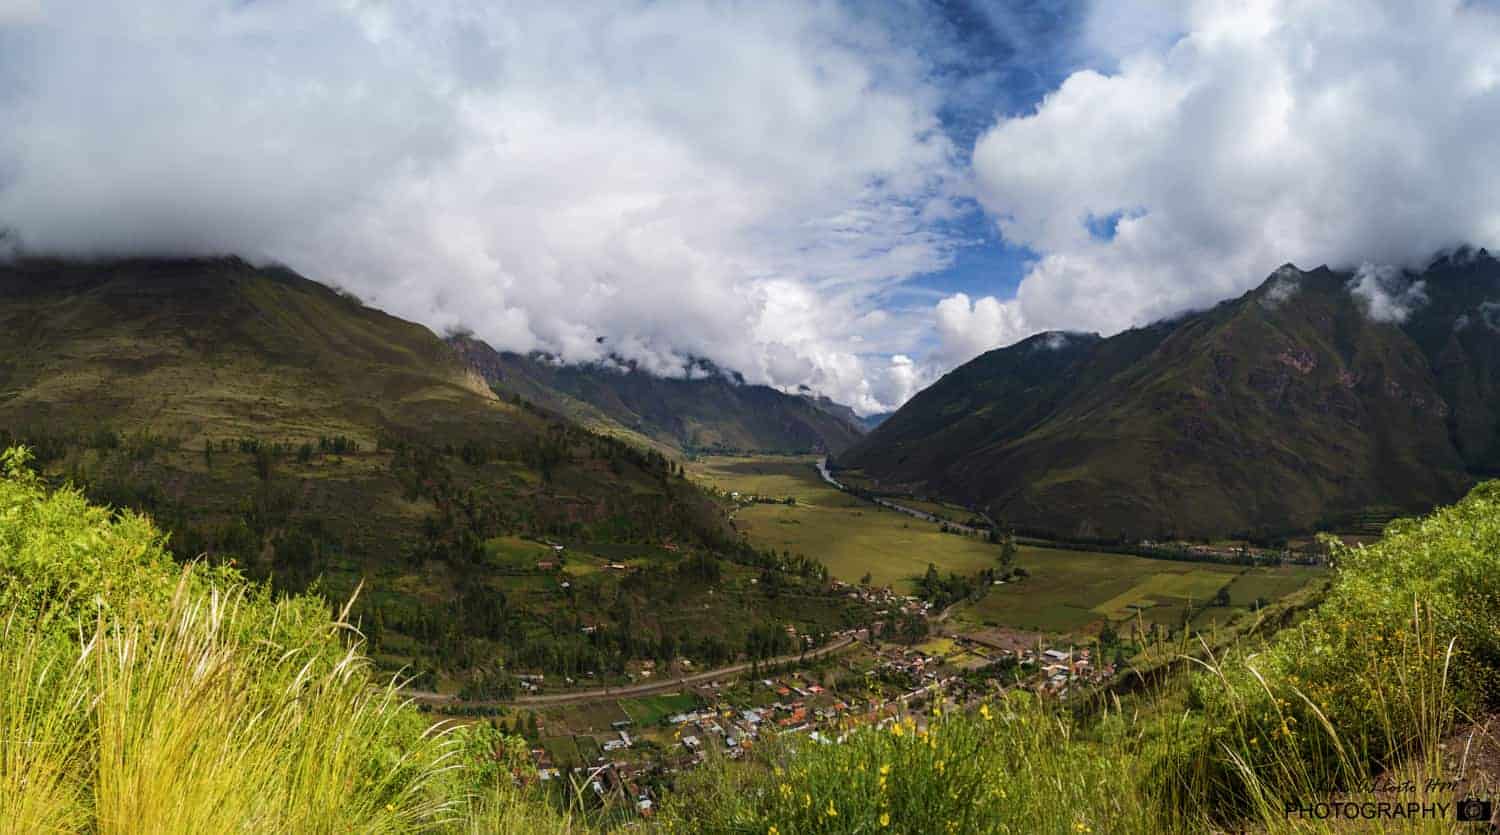 Valle Sagrado de los Incas – Aguas Calientes (Machupicchu).